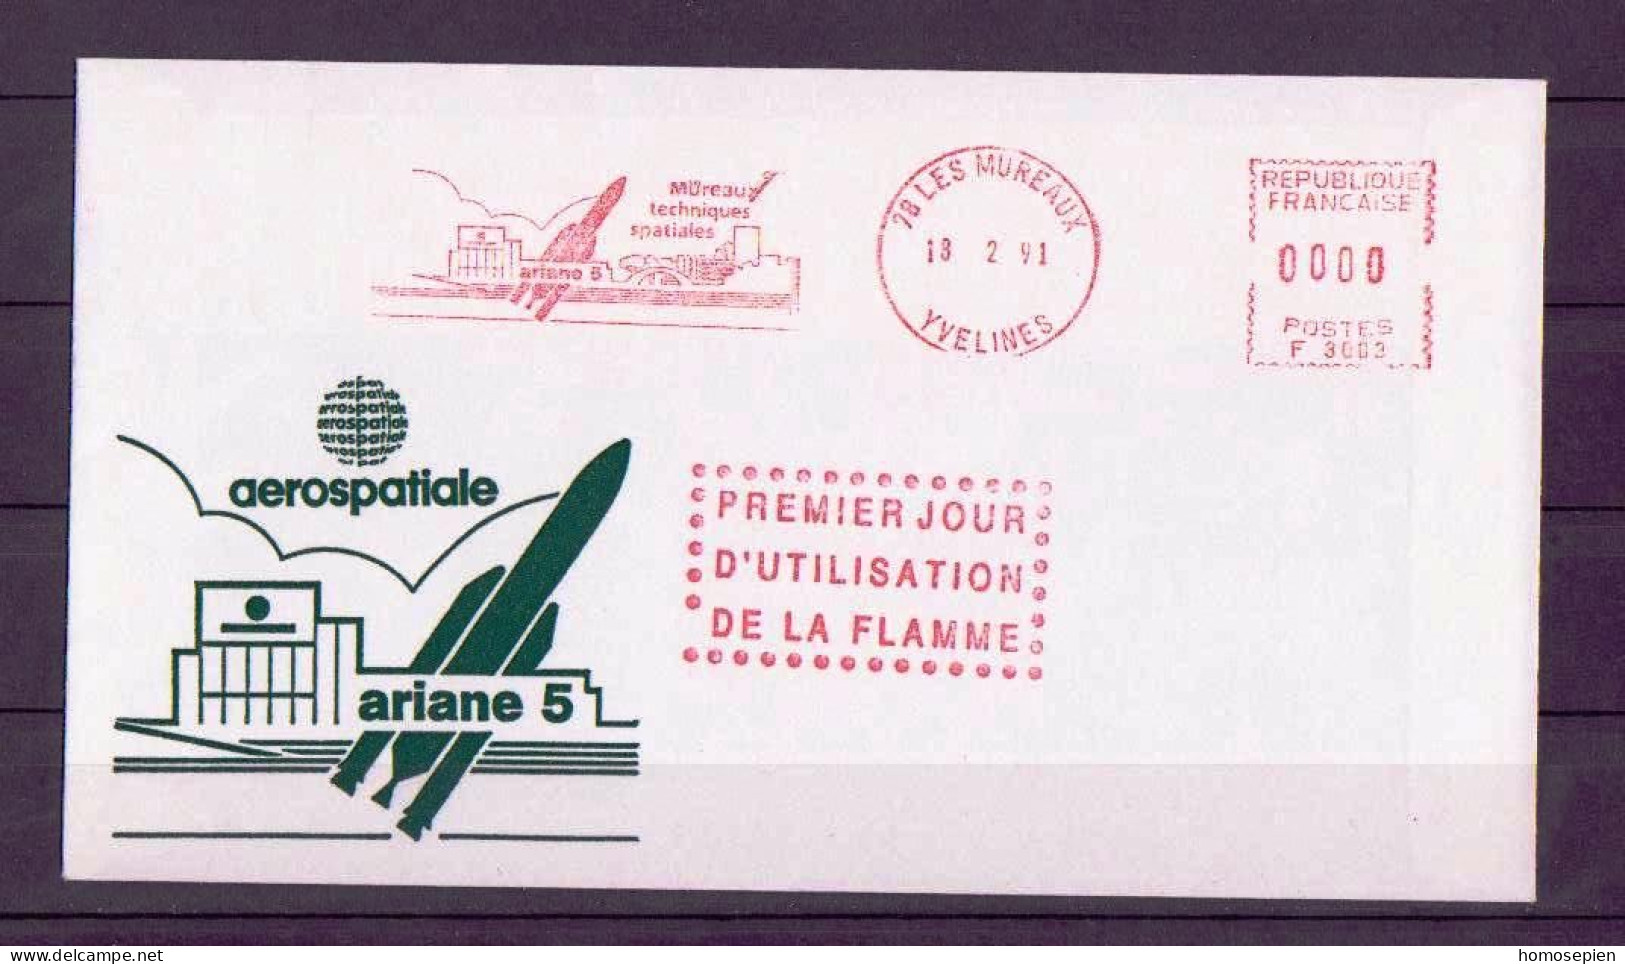 France - Frankreich LTC 1991 02 18 Y&T N°EMA1991 02 18 - Michel N°BFS1991 02 18 - 1er Jour Flamme Ariane 5 Aux Mureaux - Covers & Documents